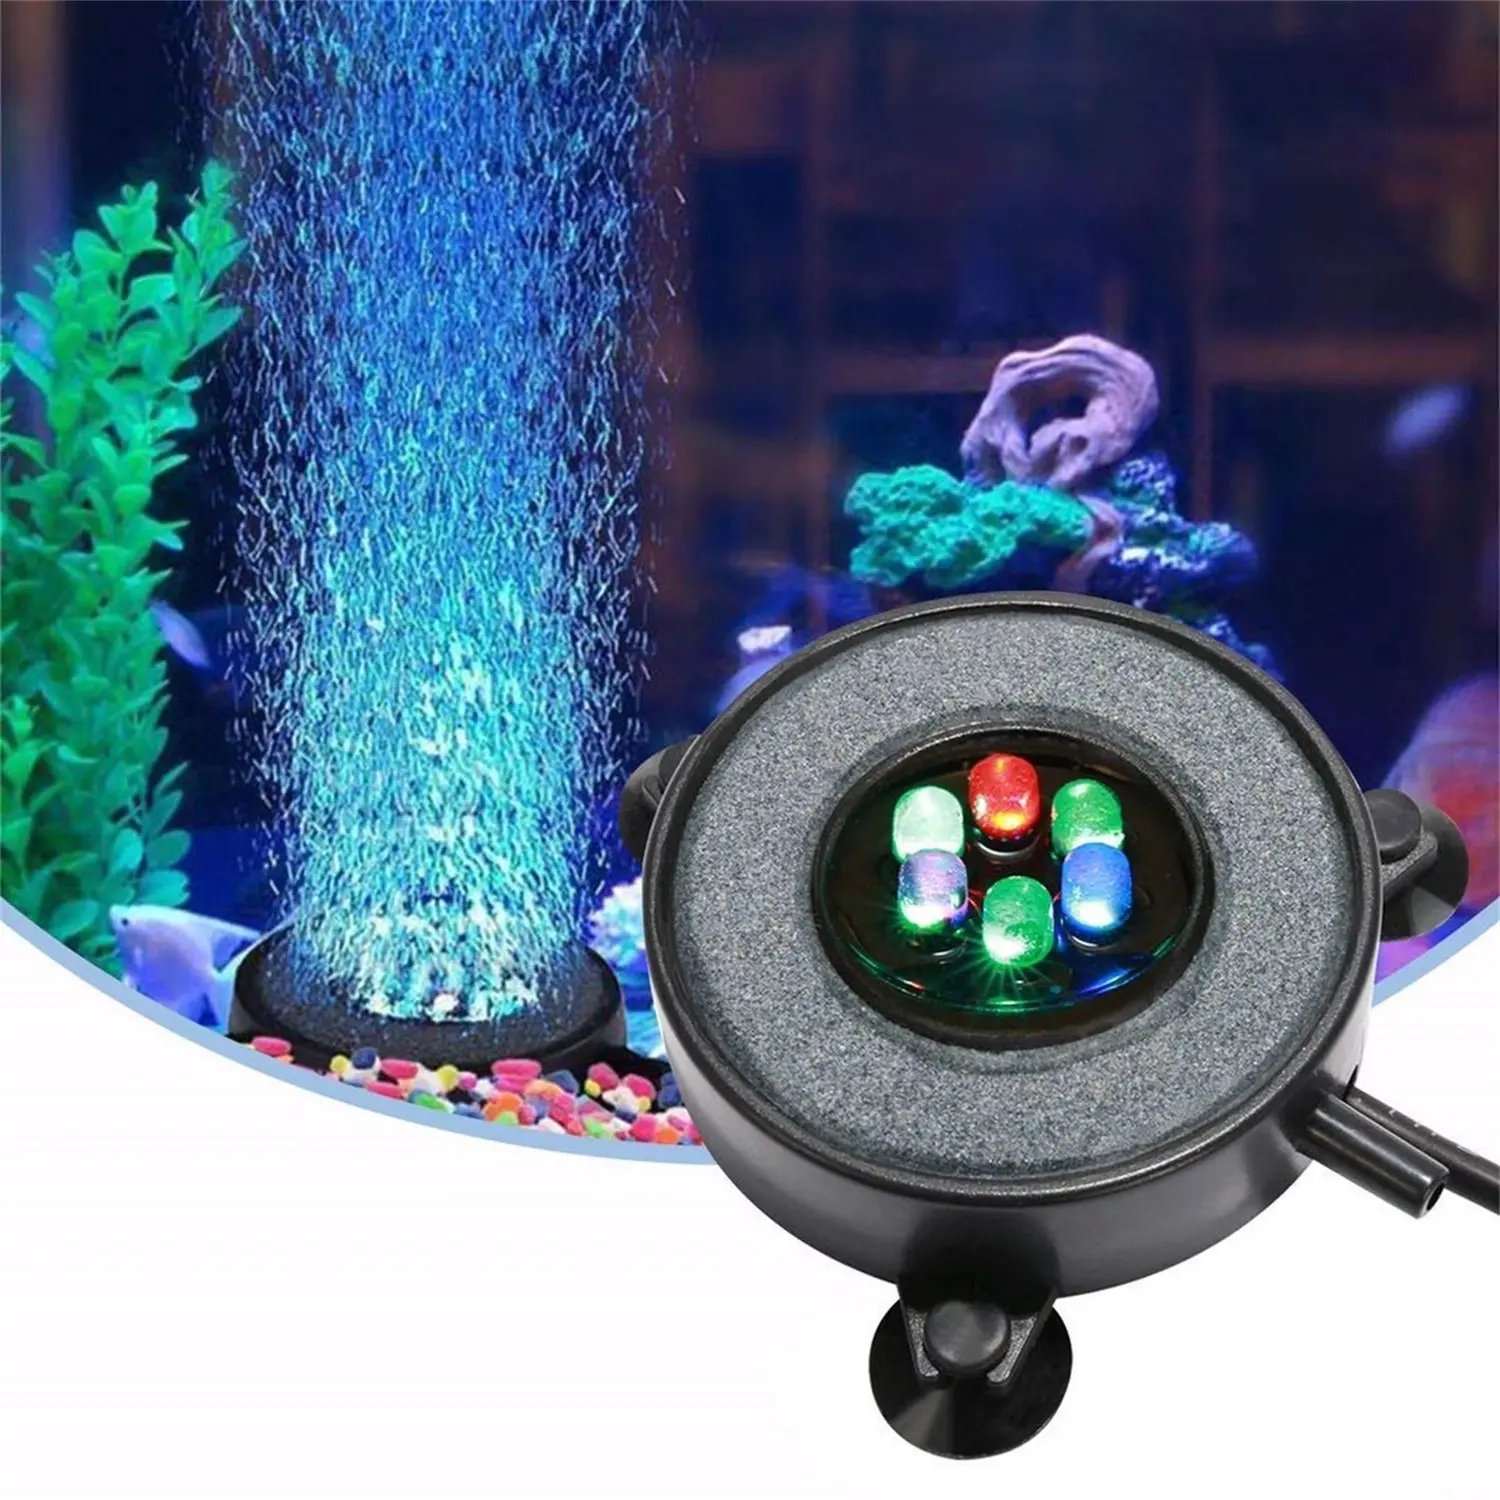 8 W RGB Aquarium lumière IP68 étanche changement de couleur Fish Tank lumières multicolore Led sous-marine bulle lampe